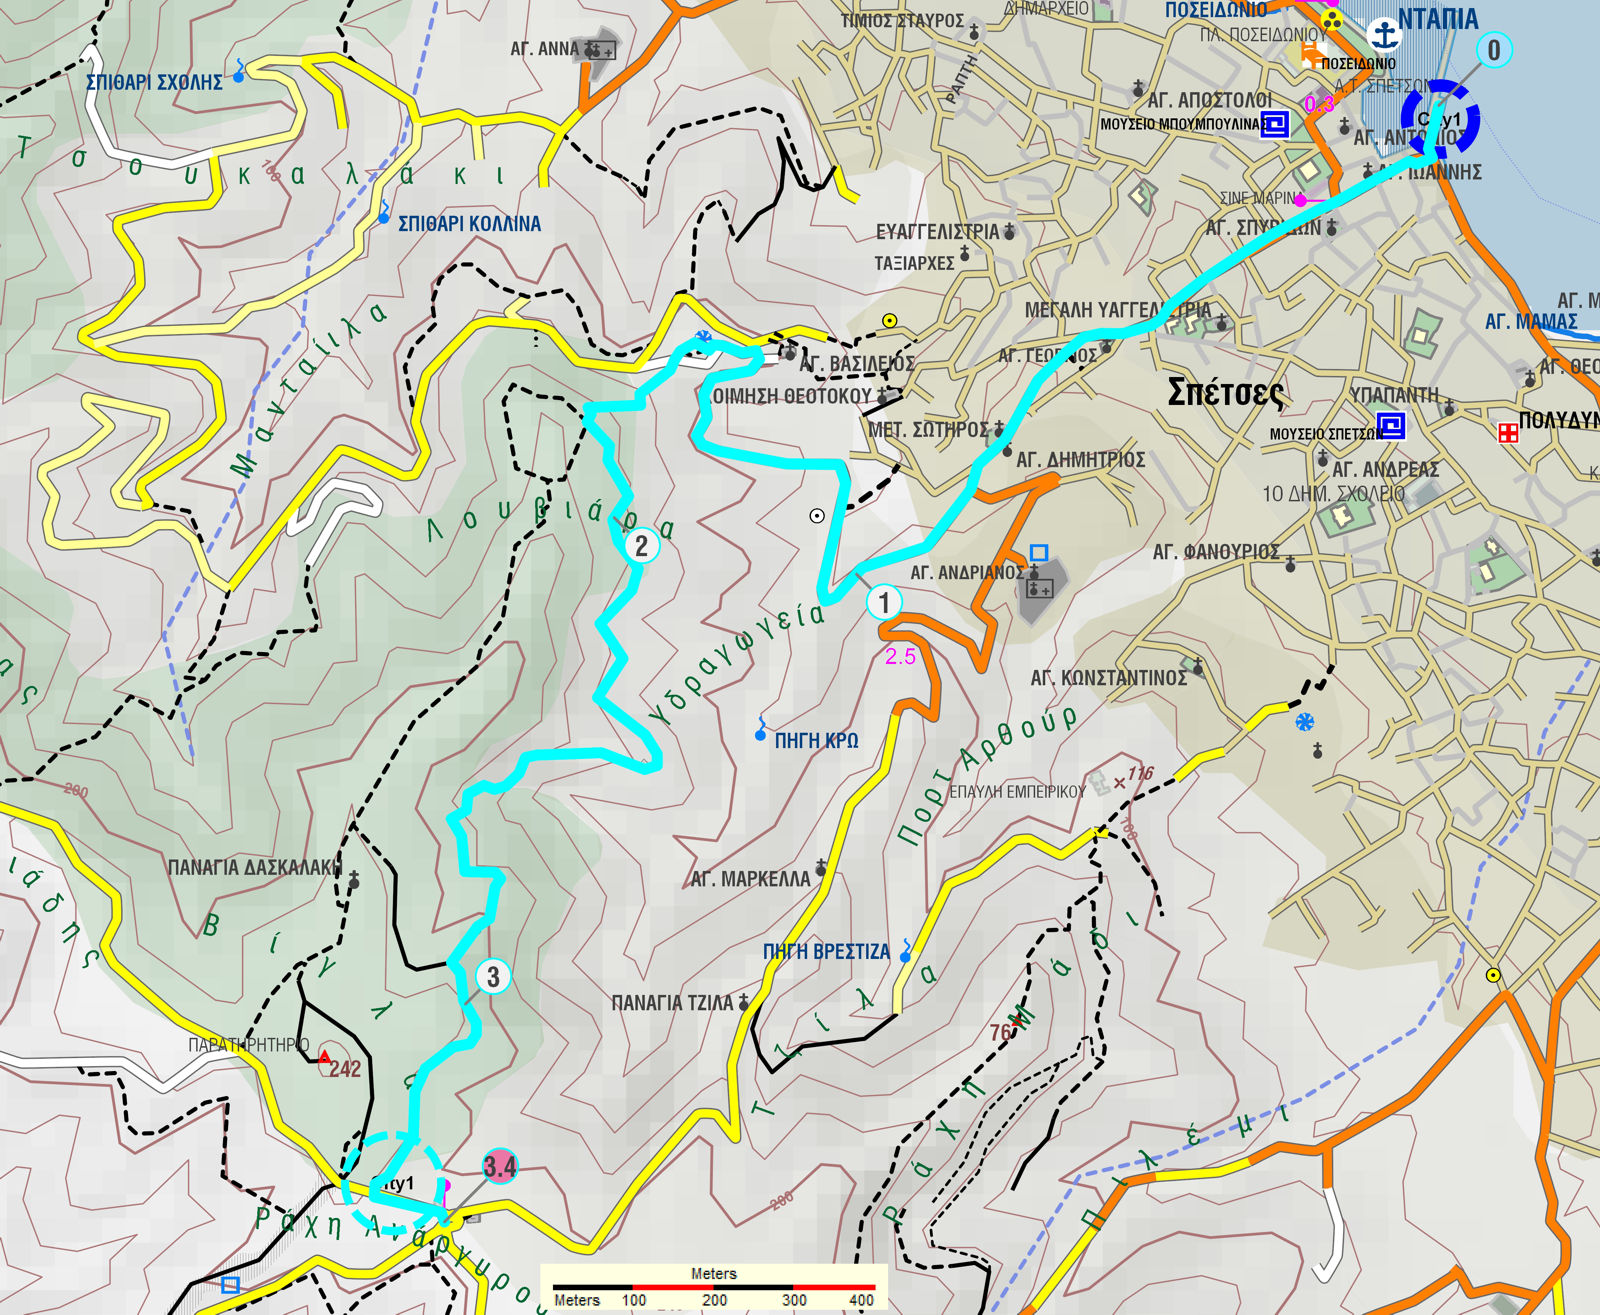 Σπέτσες: Χάρτης της διαδρομής Ντάπια-Συνάντηση Κυνηγών από σπηλιά Κοντού